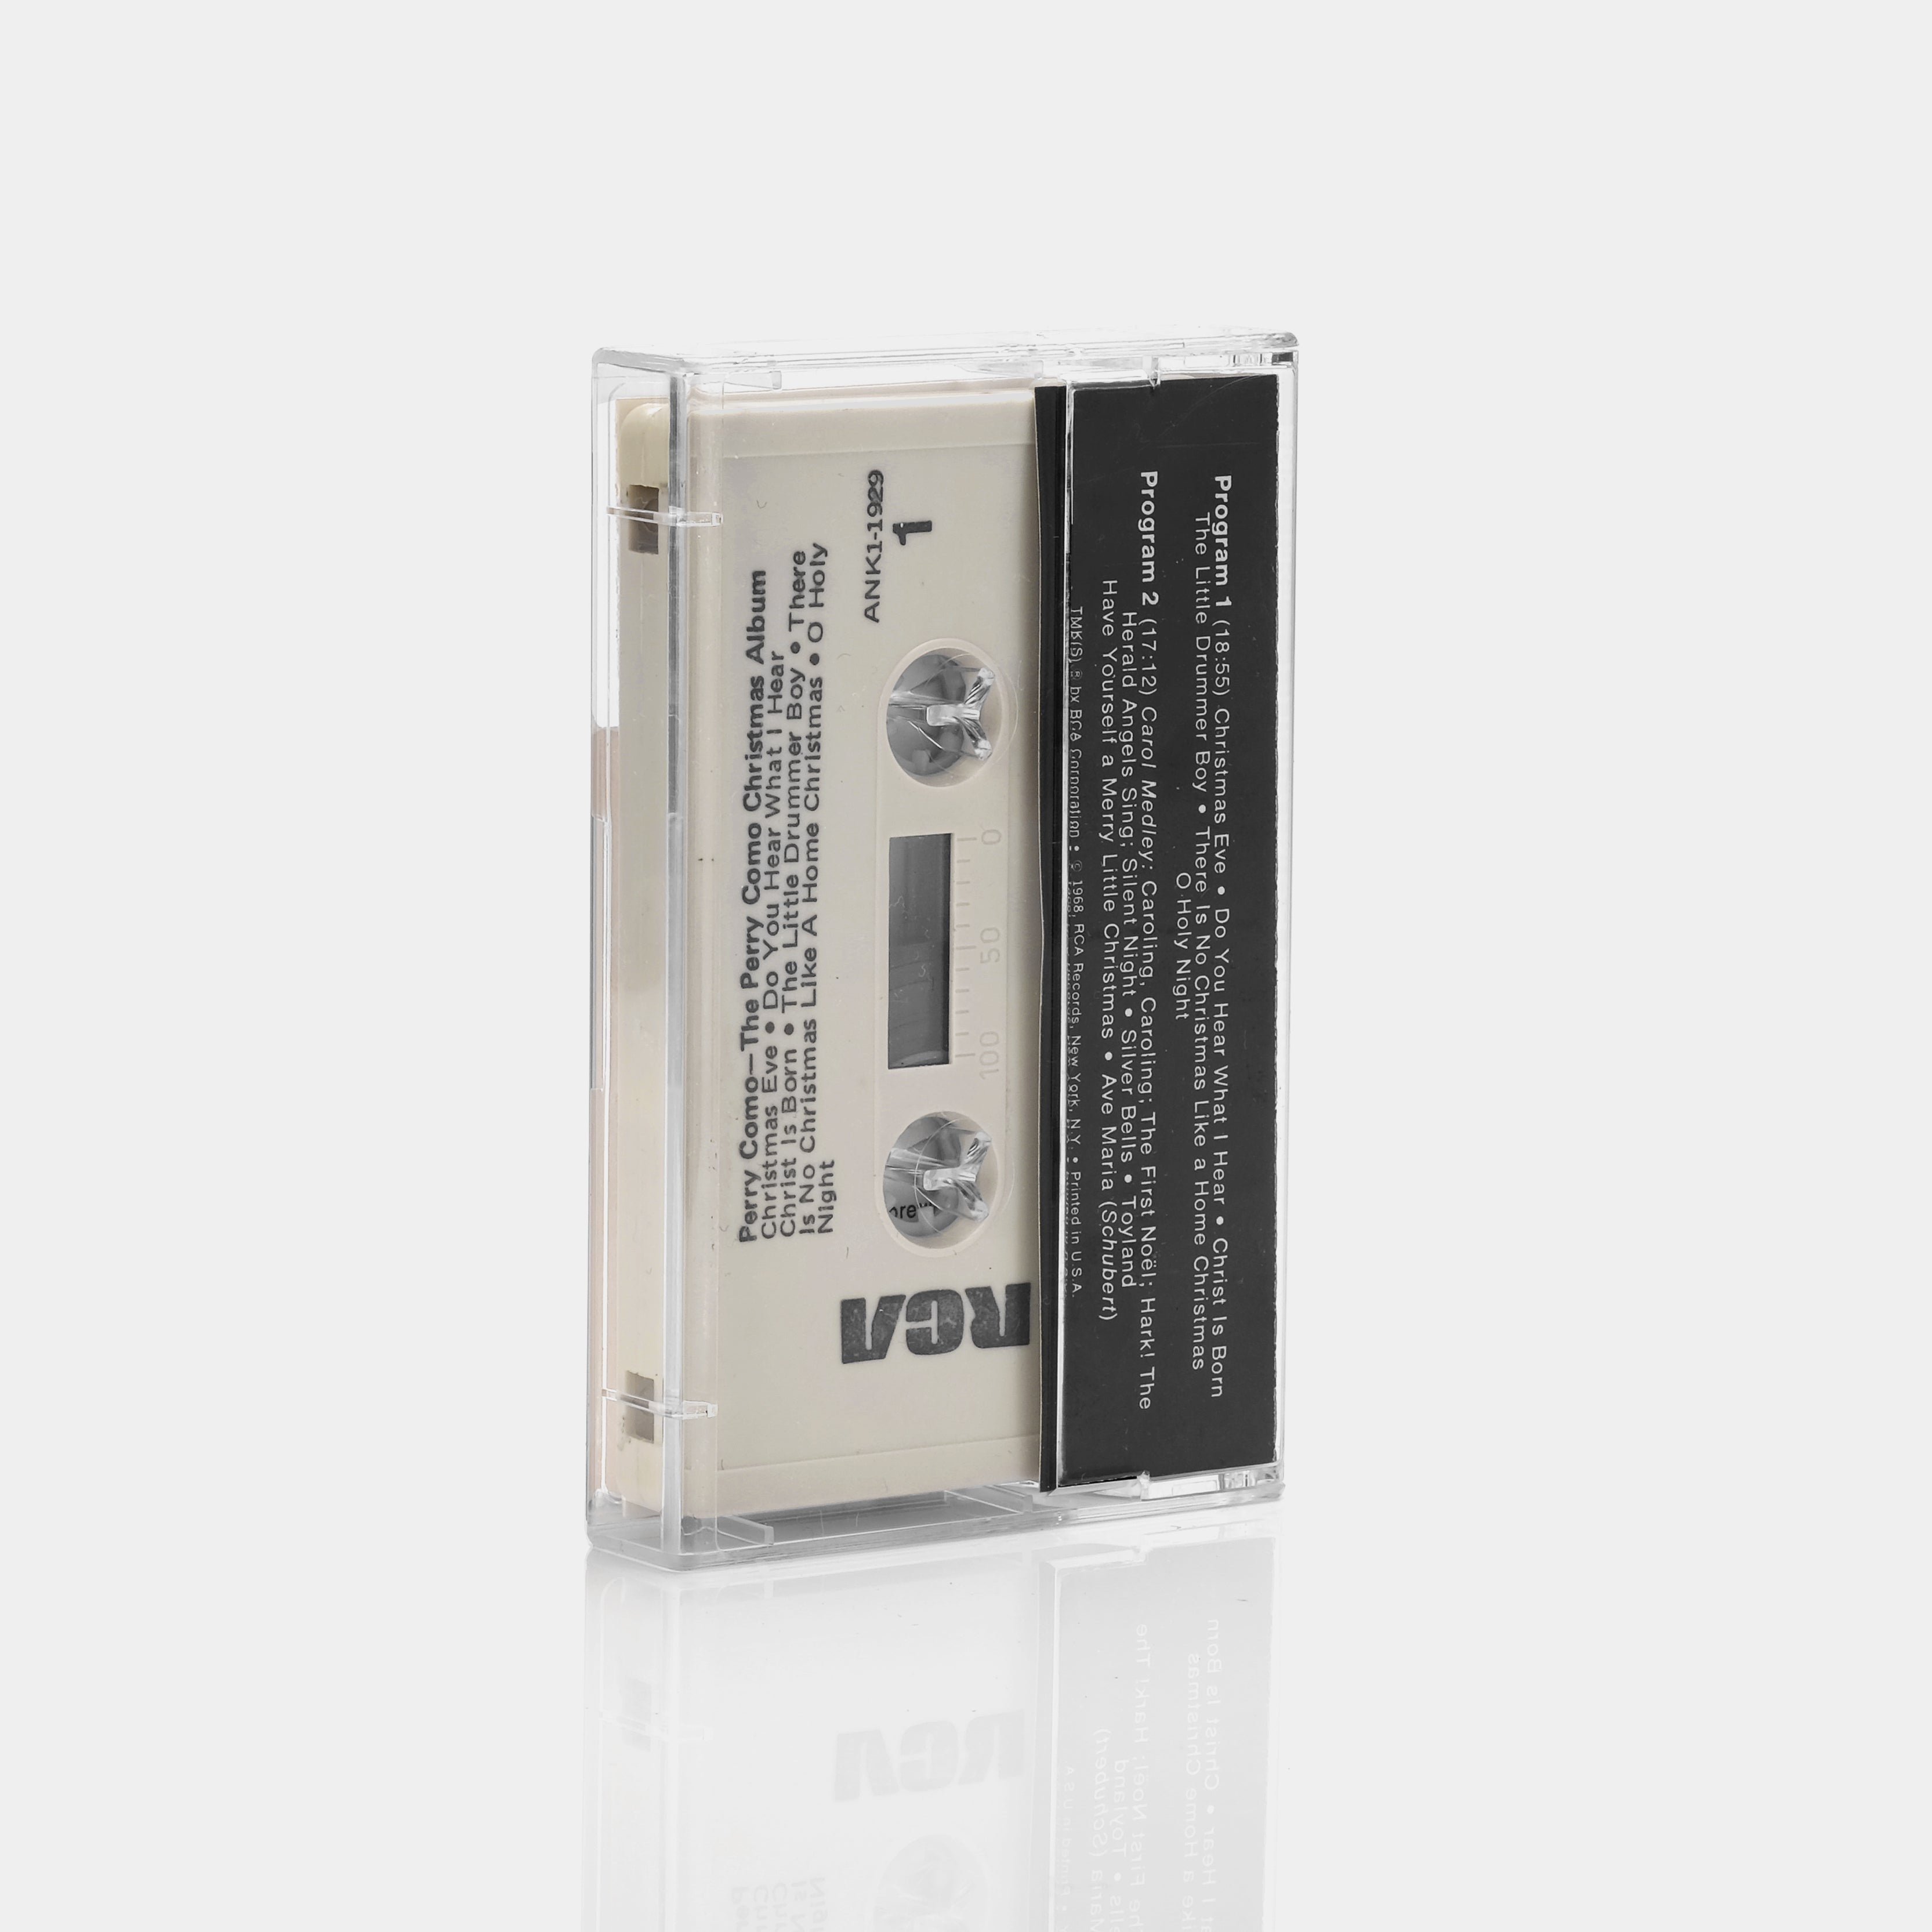 Perry Como - The Perry Como Christmas Album Cassette Tape